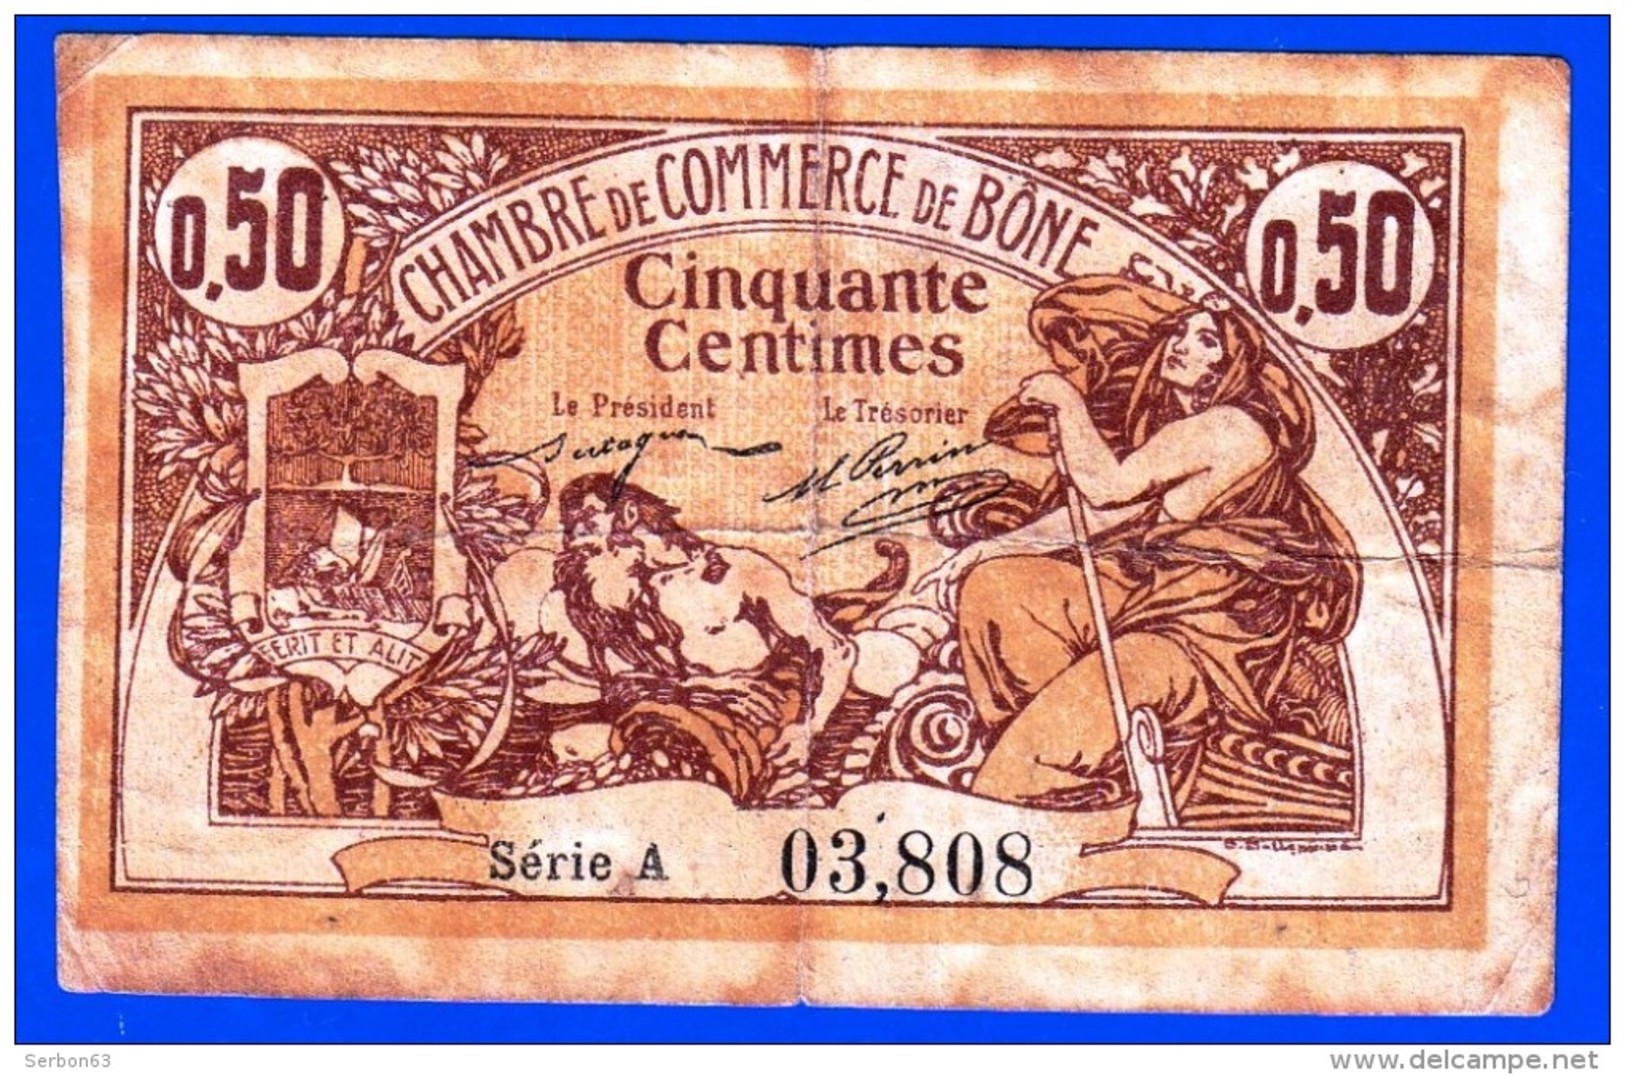 CHAMBRE DE COMMERCE DE BONE ALGERIE DELIBERATION 18 MAI 1915  50 CENTIMES SERIE A N° 03808 - NOTRE SITE Serbon63 - Algérie